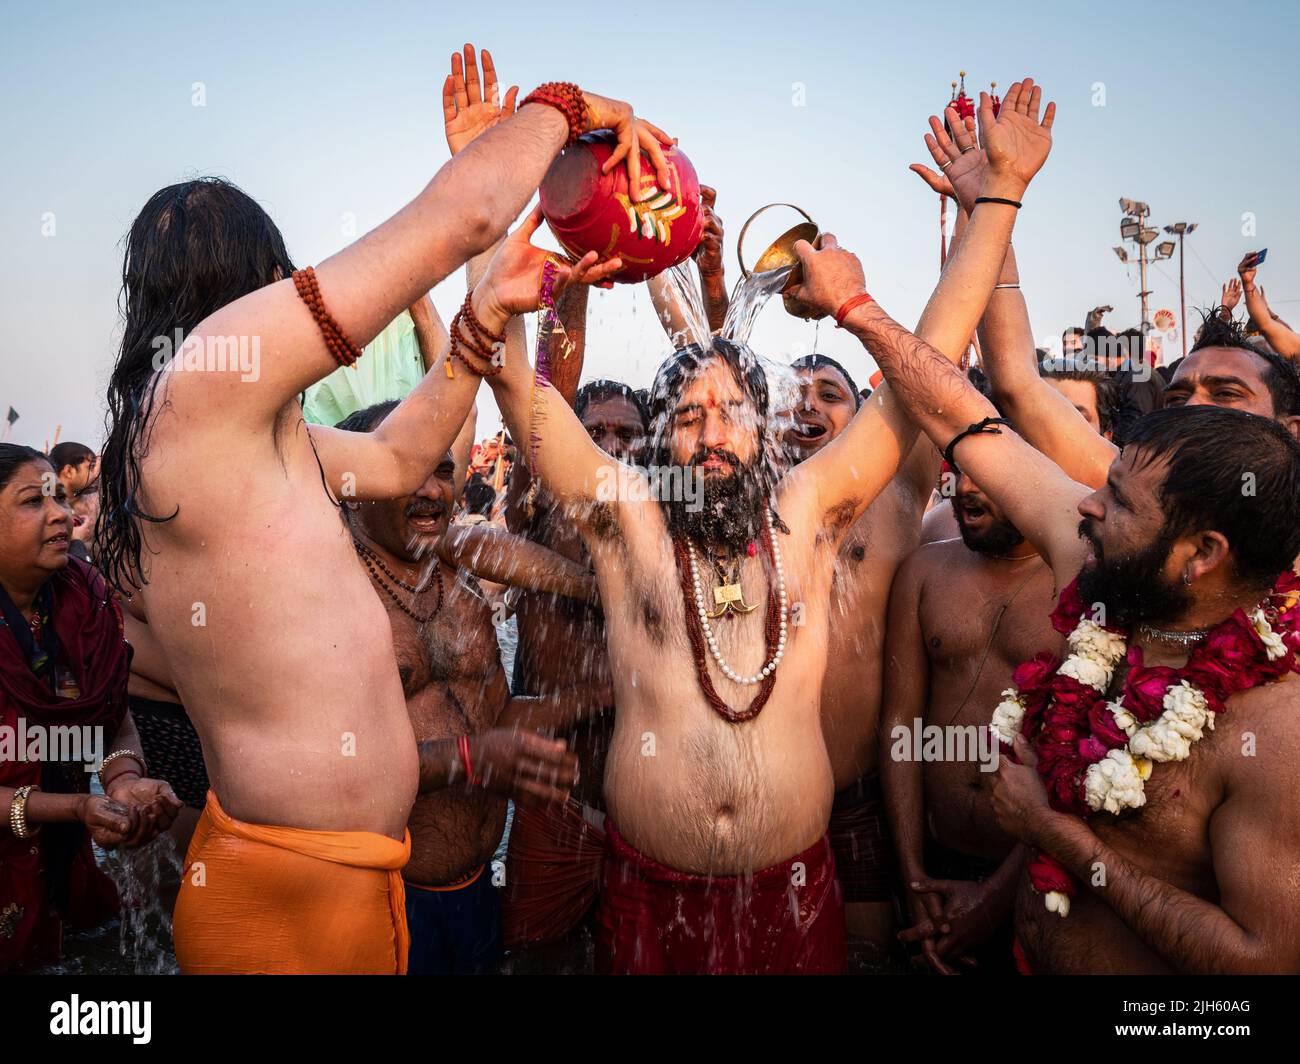 Adoradores hindúes orando y bañándose en las aguas sagradas en el Triveni Sangam con miles de otros devotos en el Festival Kumbh Mela en la India. Foto de stock